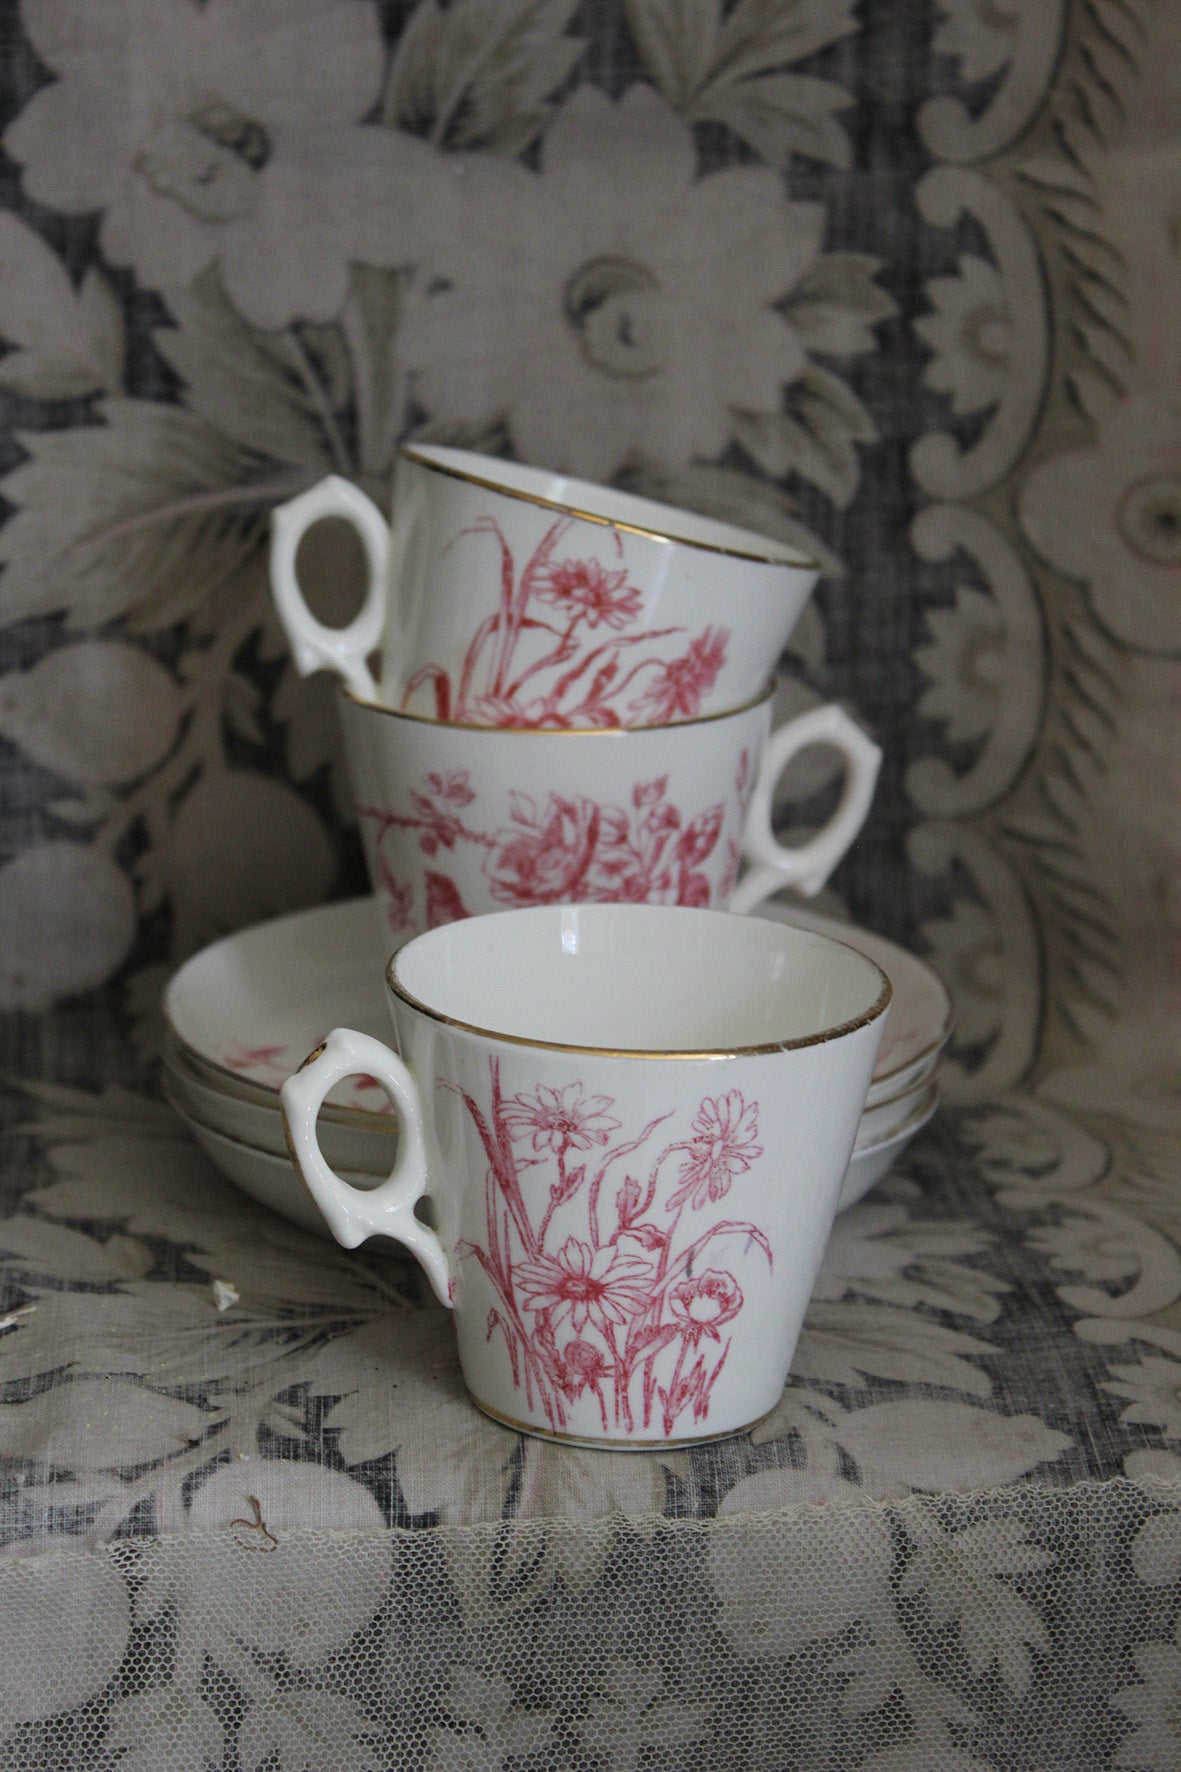 Precious Trio of Victorian Pink Cup & Saucers - Birds, Daisies & Camelias